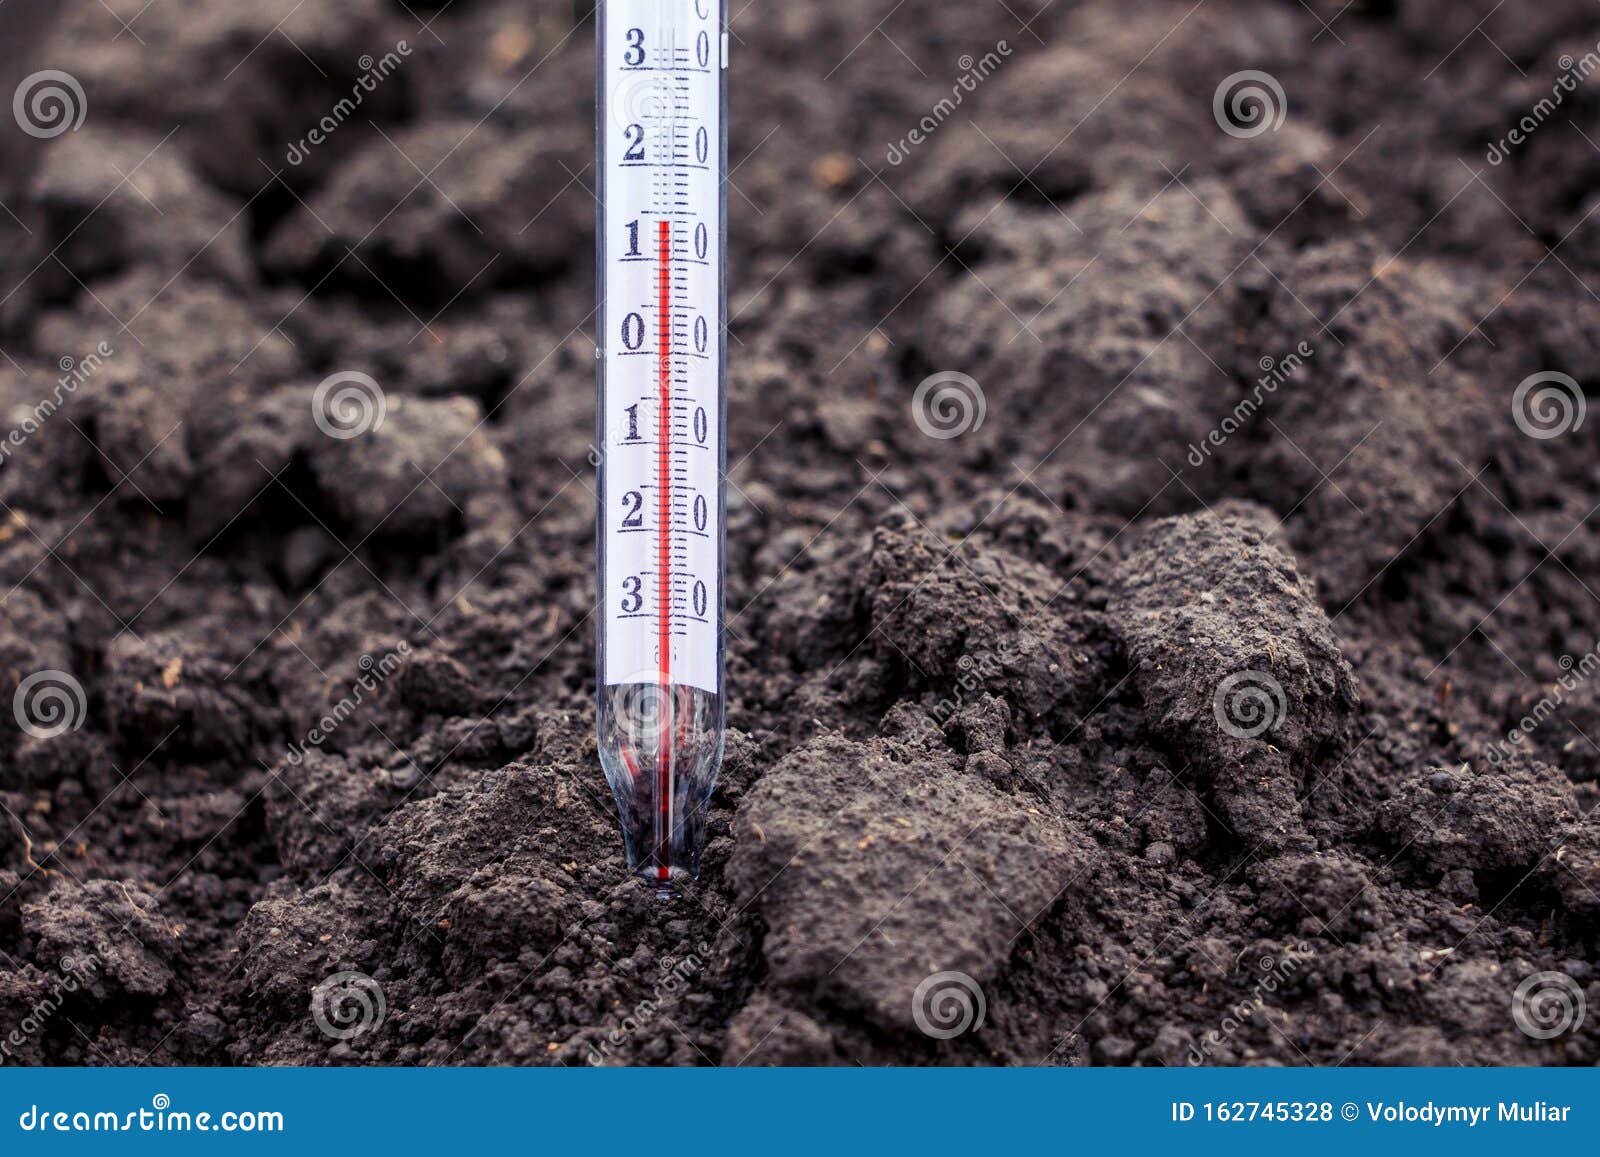 Почему влажная почва прогревается быстрее. Температура почвы. Термометр почвенный. Измерение температуры почвы. Термометр для почвы.